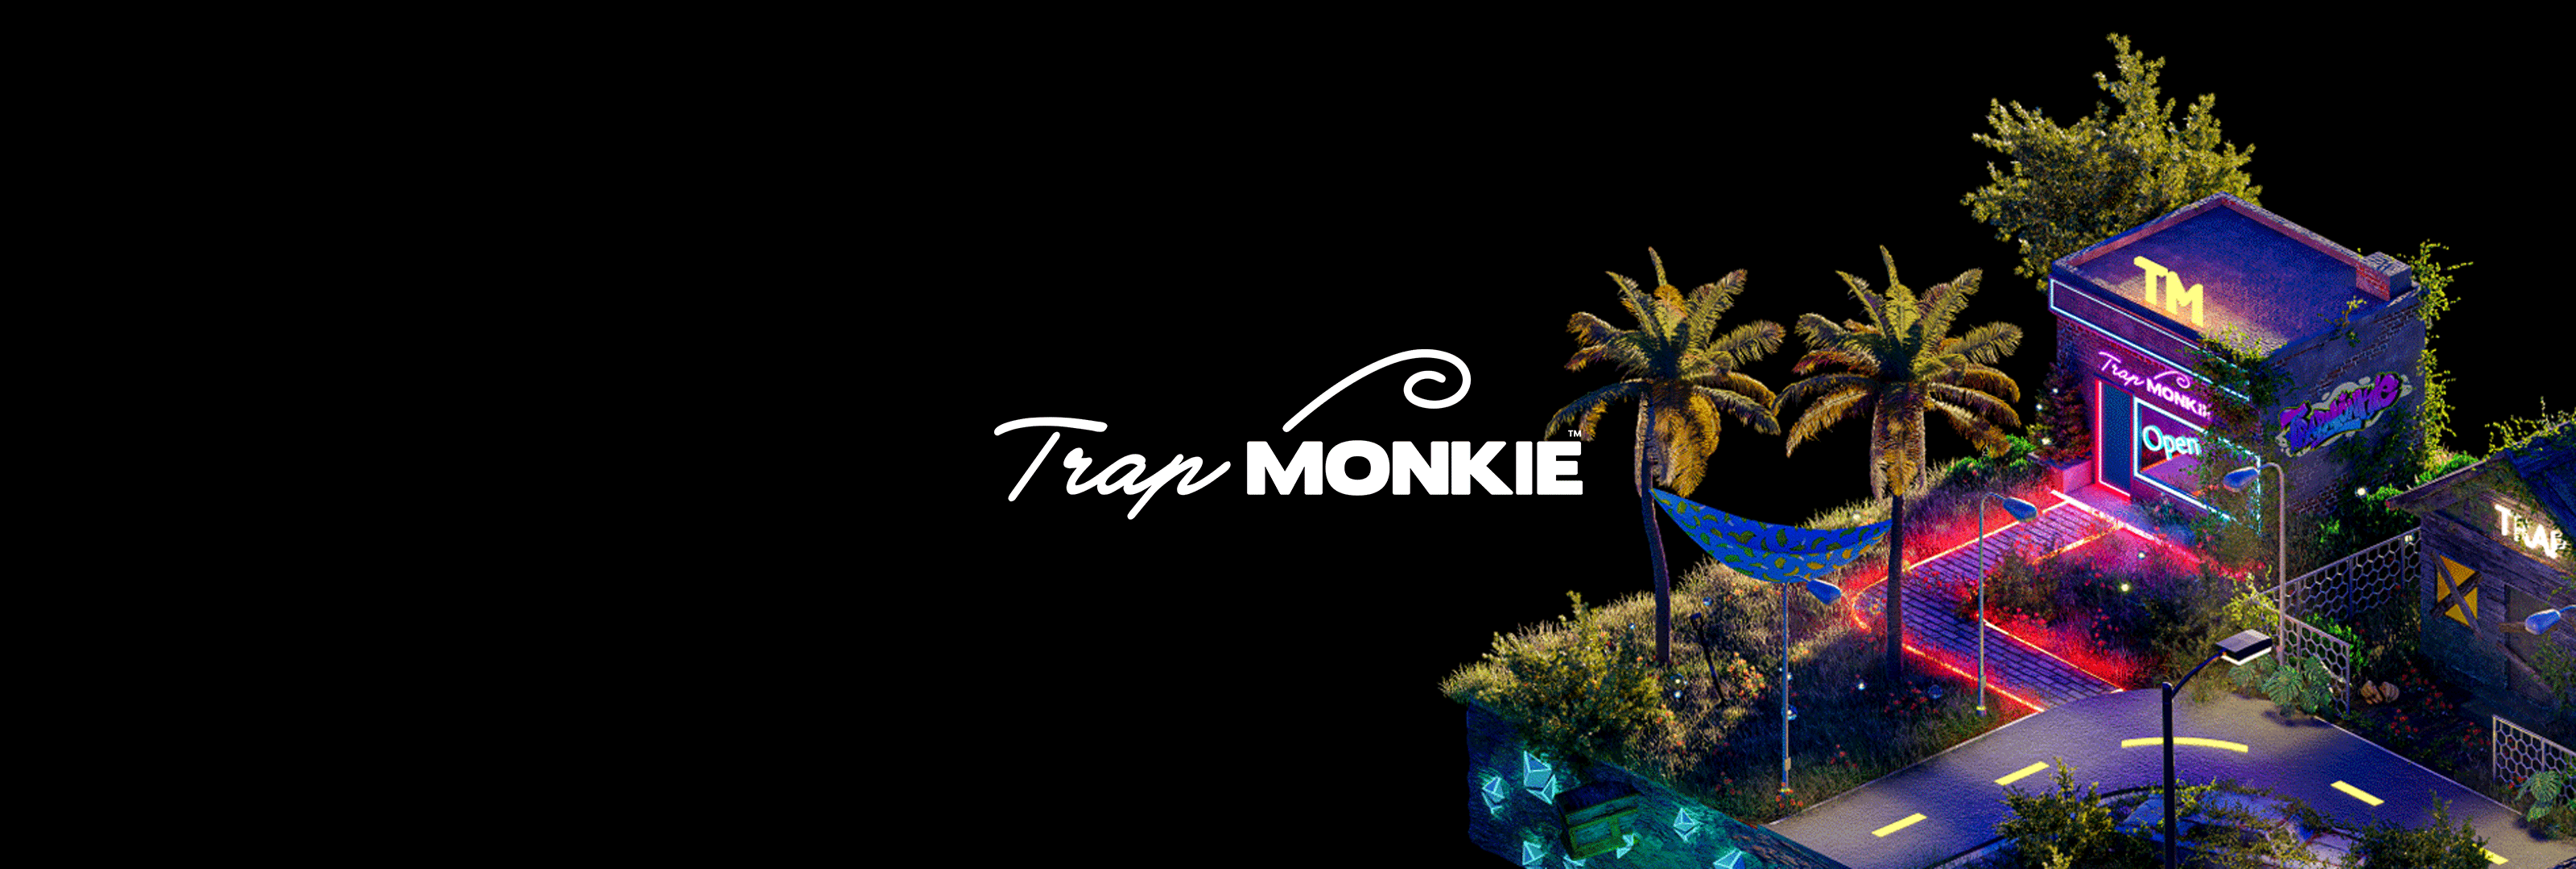 TrapMonkie_LLC バナー